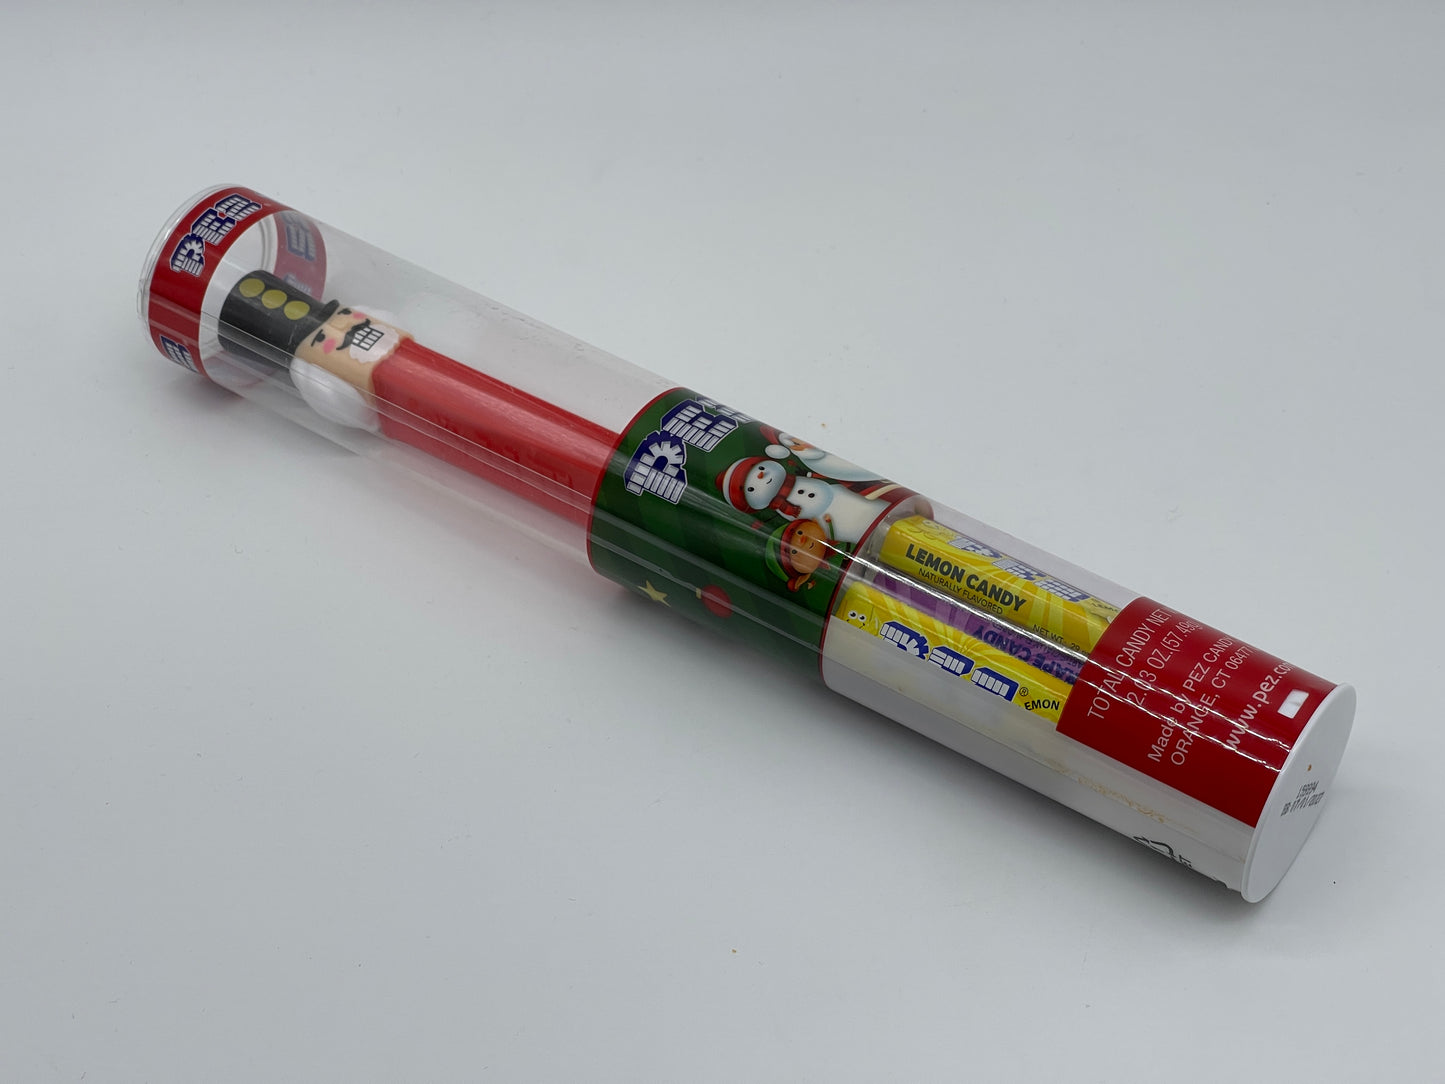 PEZ Christmas Edition Tube "Nutcracker" tube collector's case USA (2022)